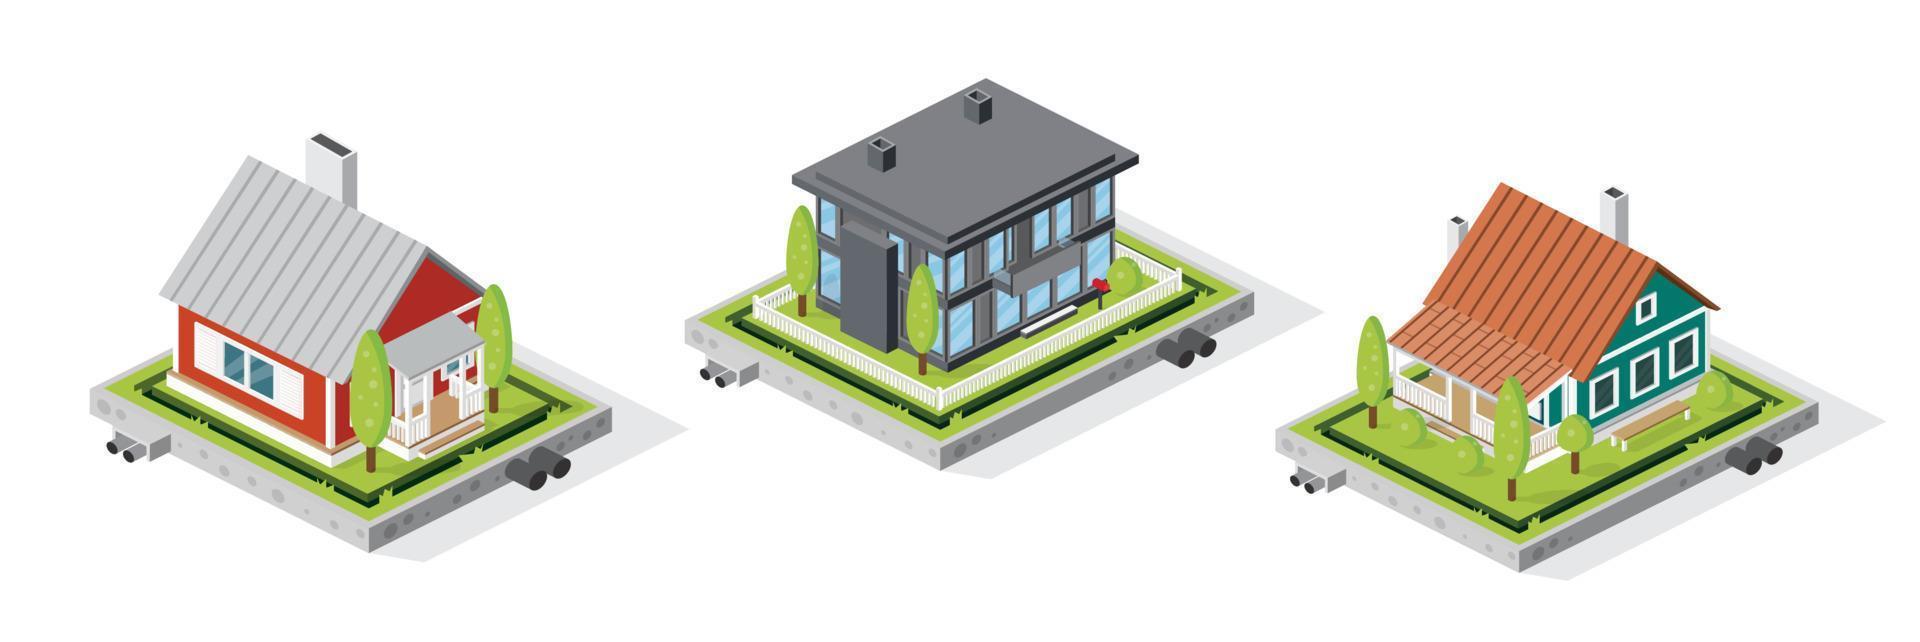 Conjunto de edificios de viviendas residenciales aislado en blanco. concepto isométrico. vector